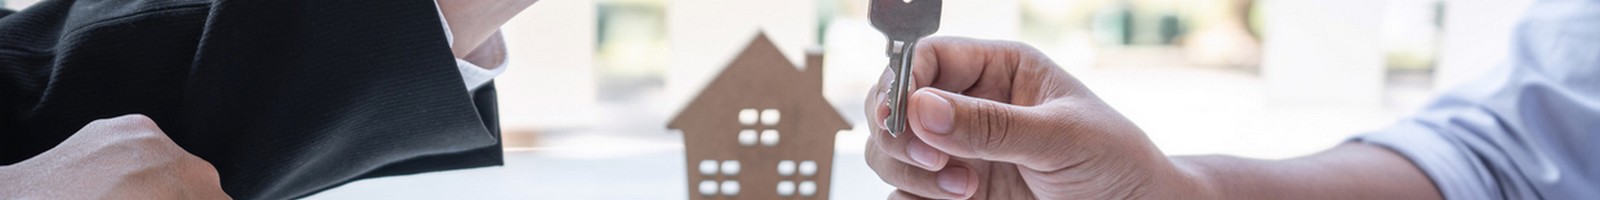 Contrat d’assurance habitation : quel est l’impact de la franchise sur la couverture ?